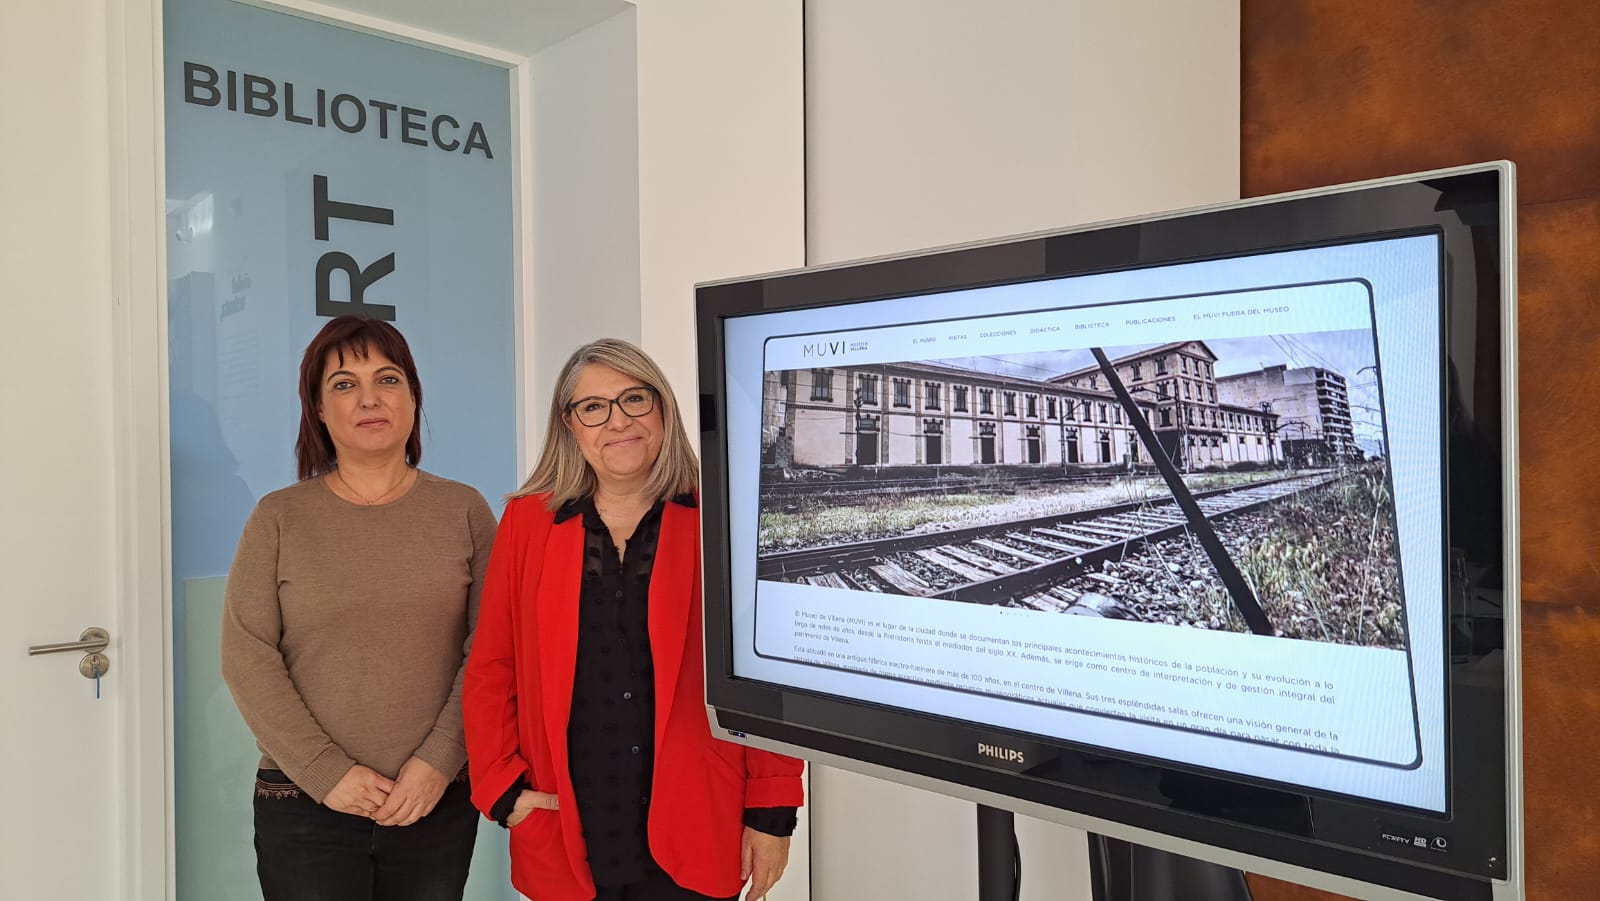 El Museo de Villena presenta su nueva web antes de su inauguración